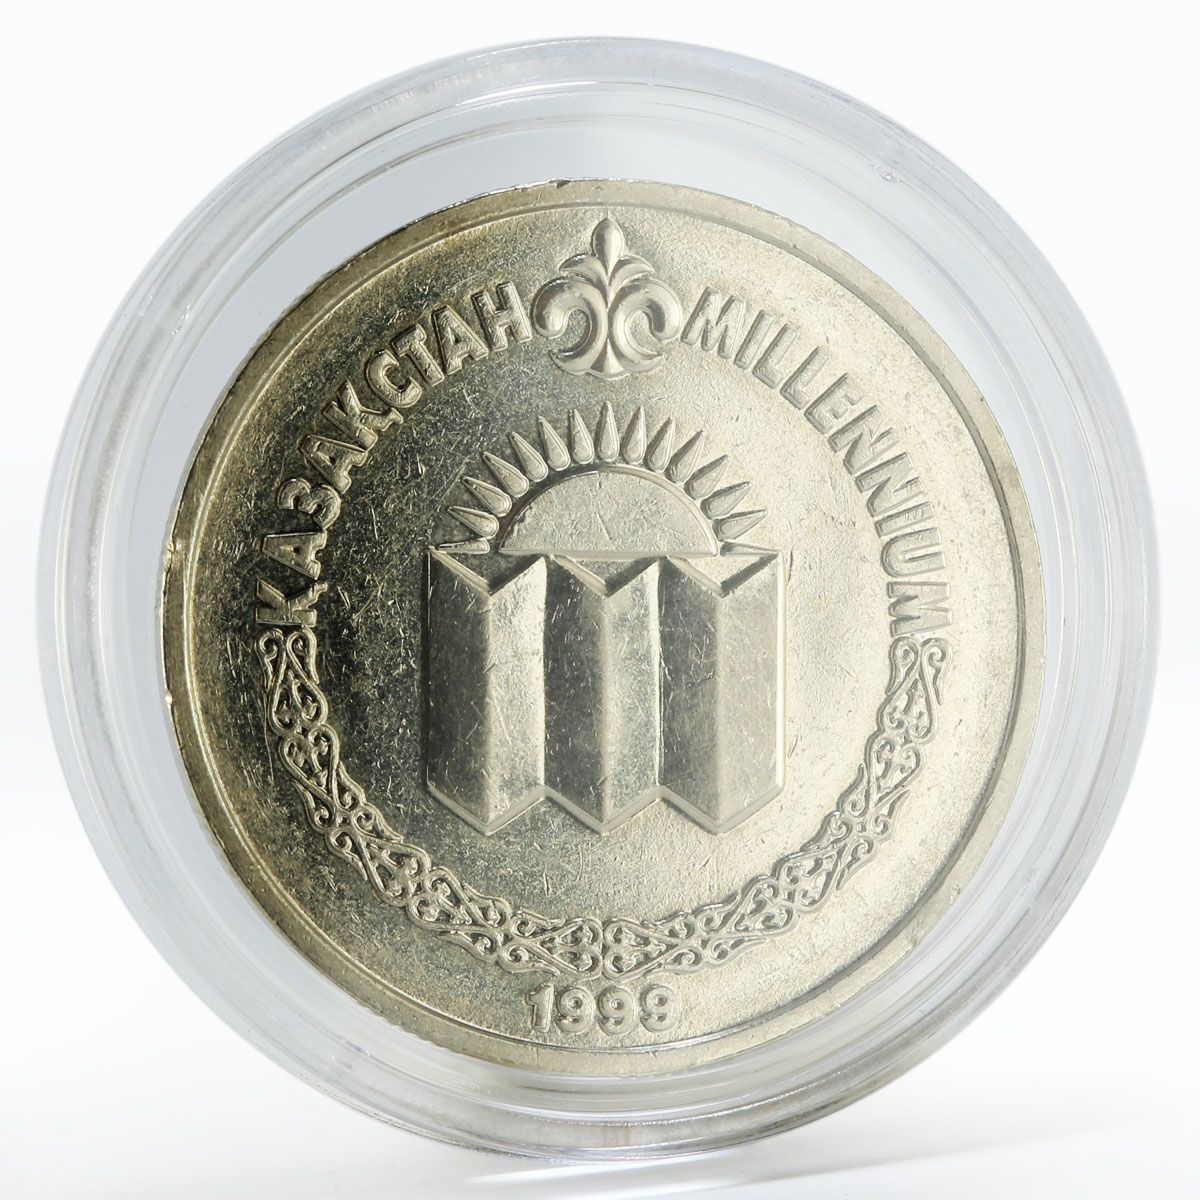 Kazakhstan 50 tenge Millennium solemn meeting copper-nickel coin 1999